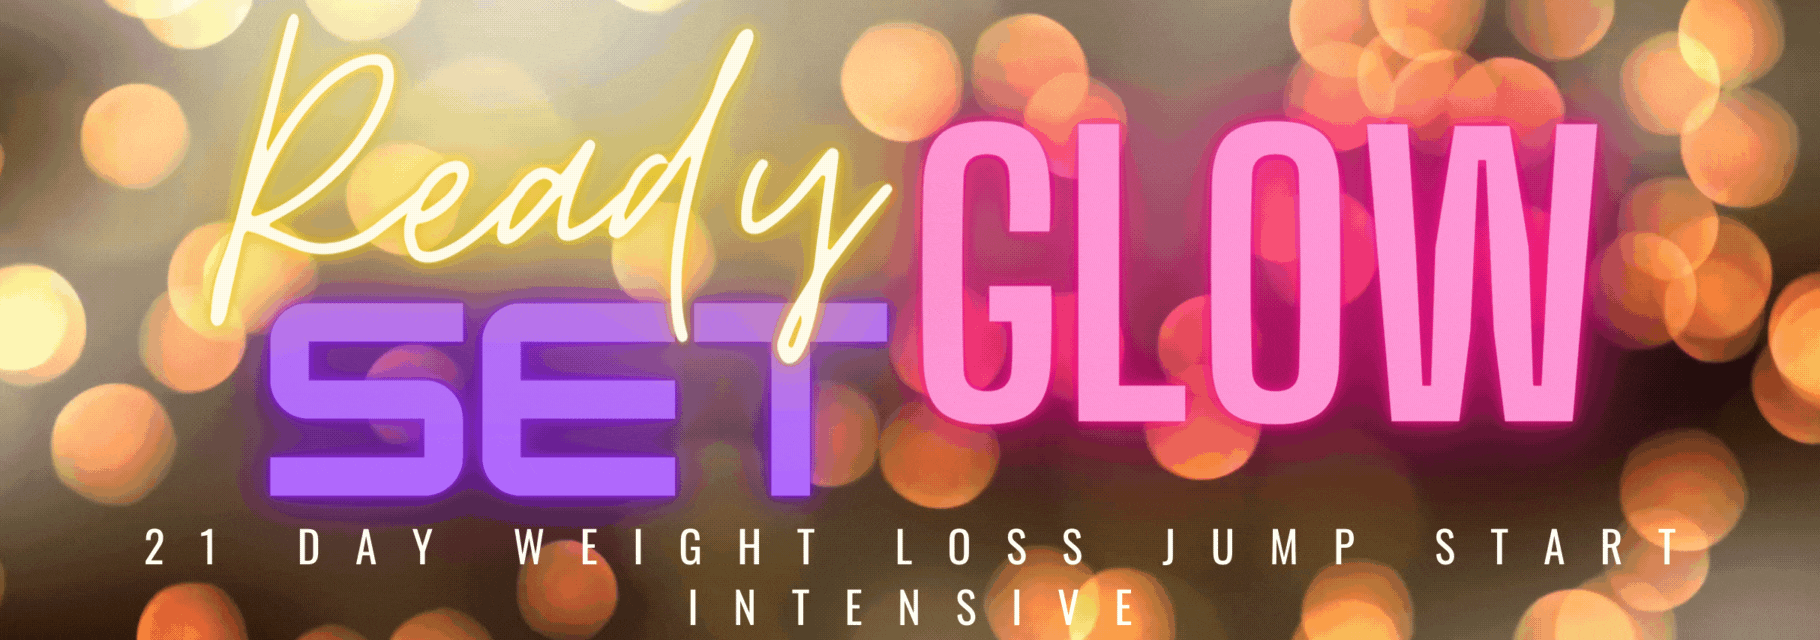 Ready Set Glow - 3 Week Fat Loss Intensive